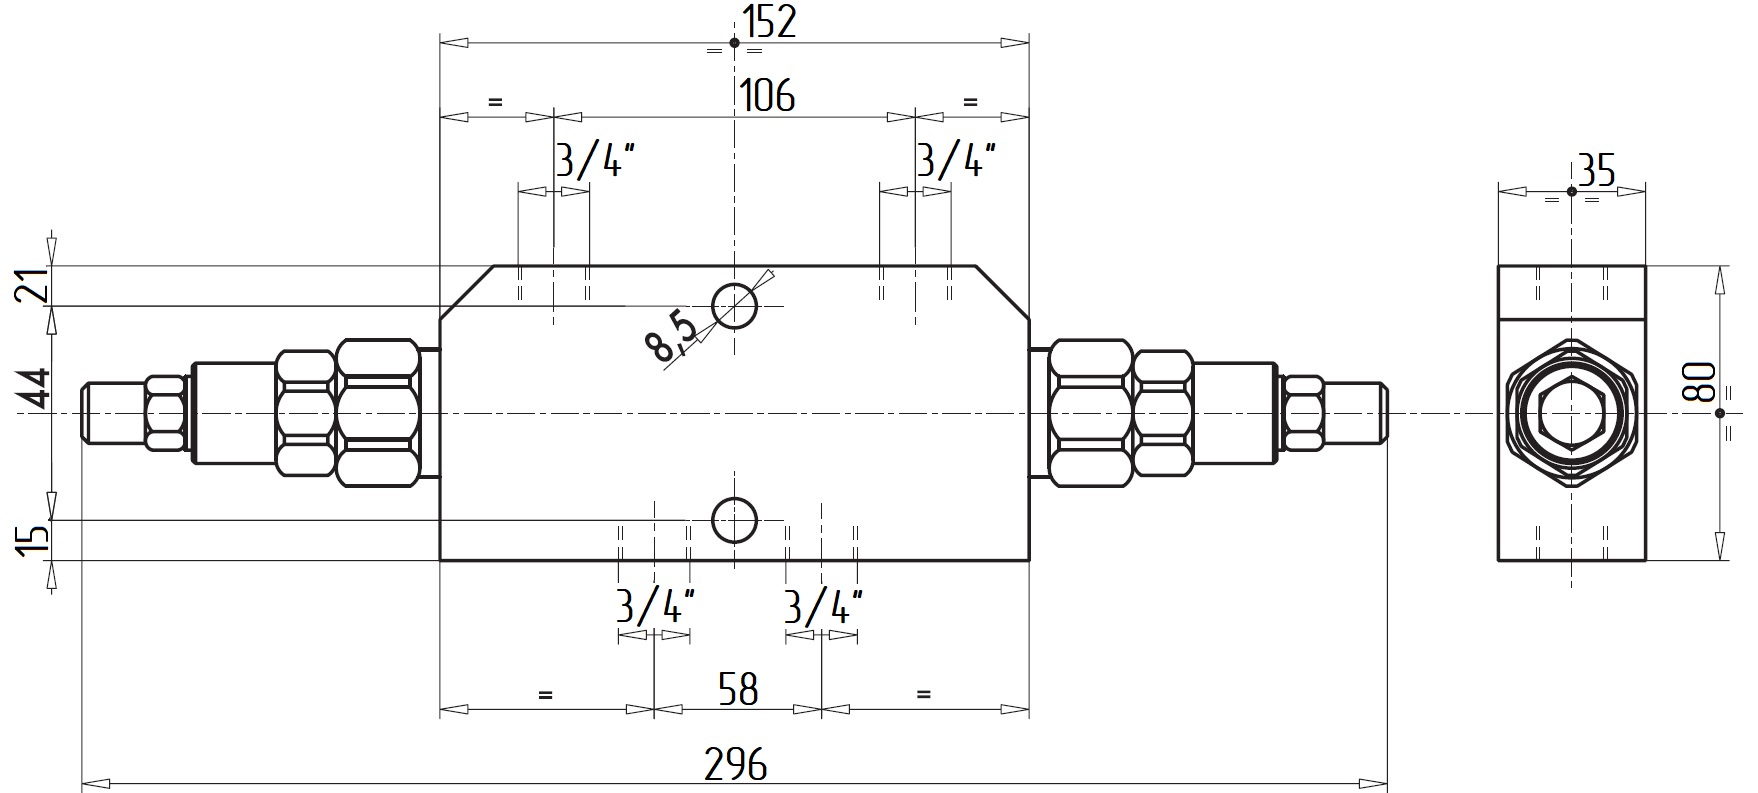 Габаритные размеры V0431/RP18-VBCD 3/4 DE RP 1:8 Подпорно-тормозной клапан двусторонний